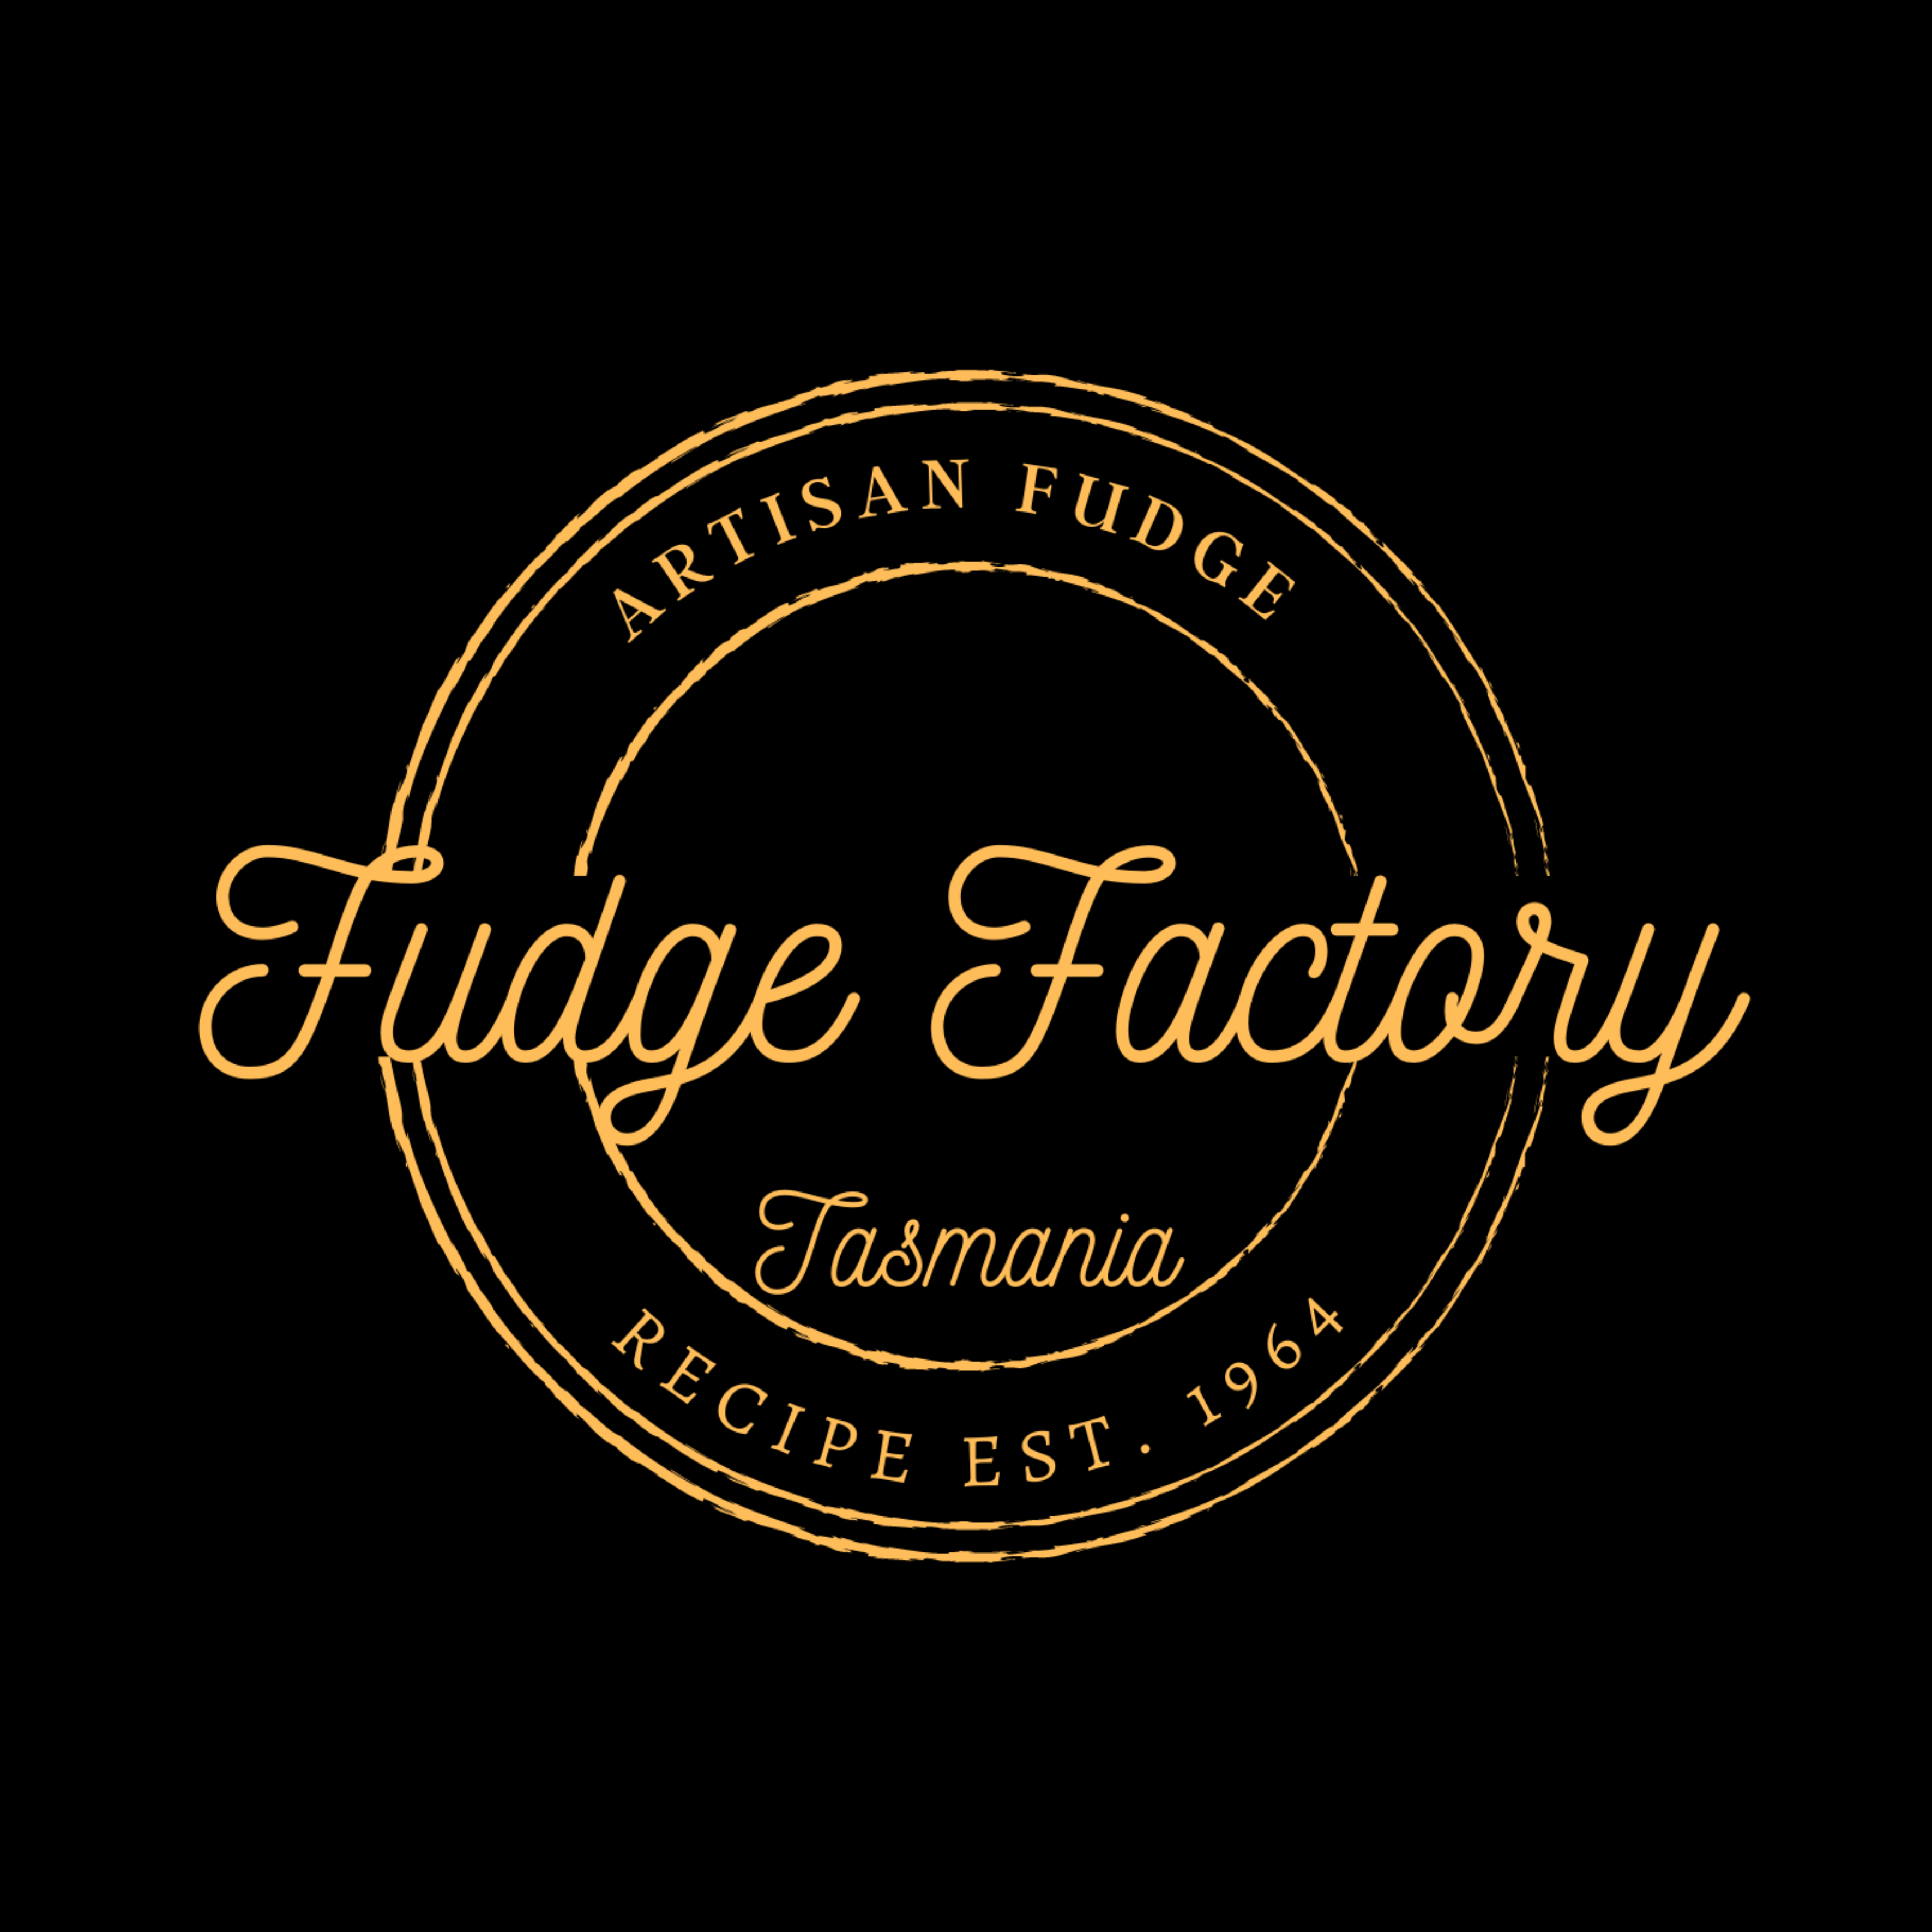 Fudge Factory Tasmania